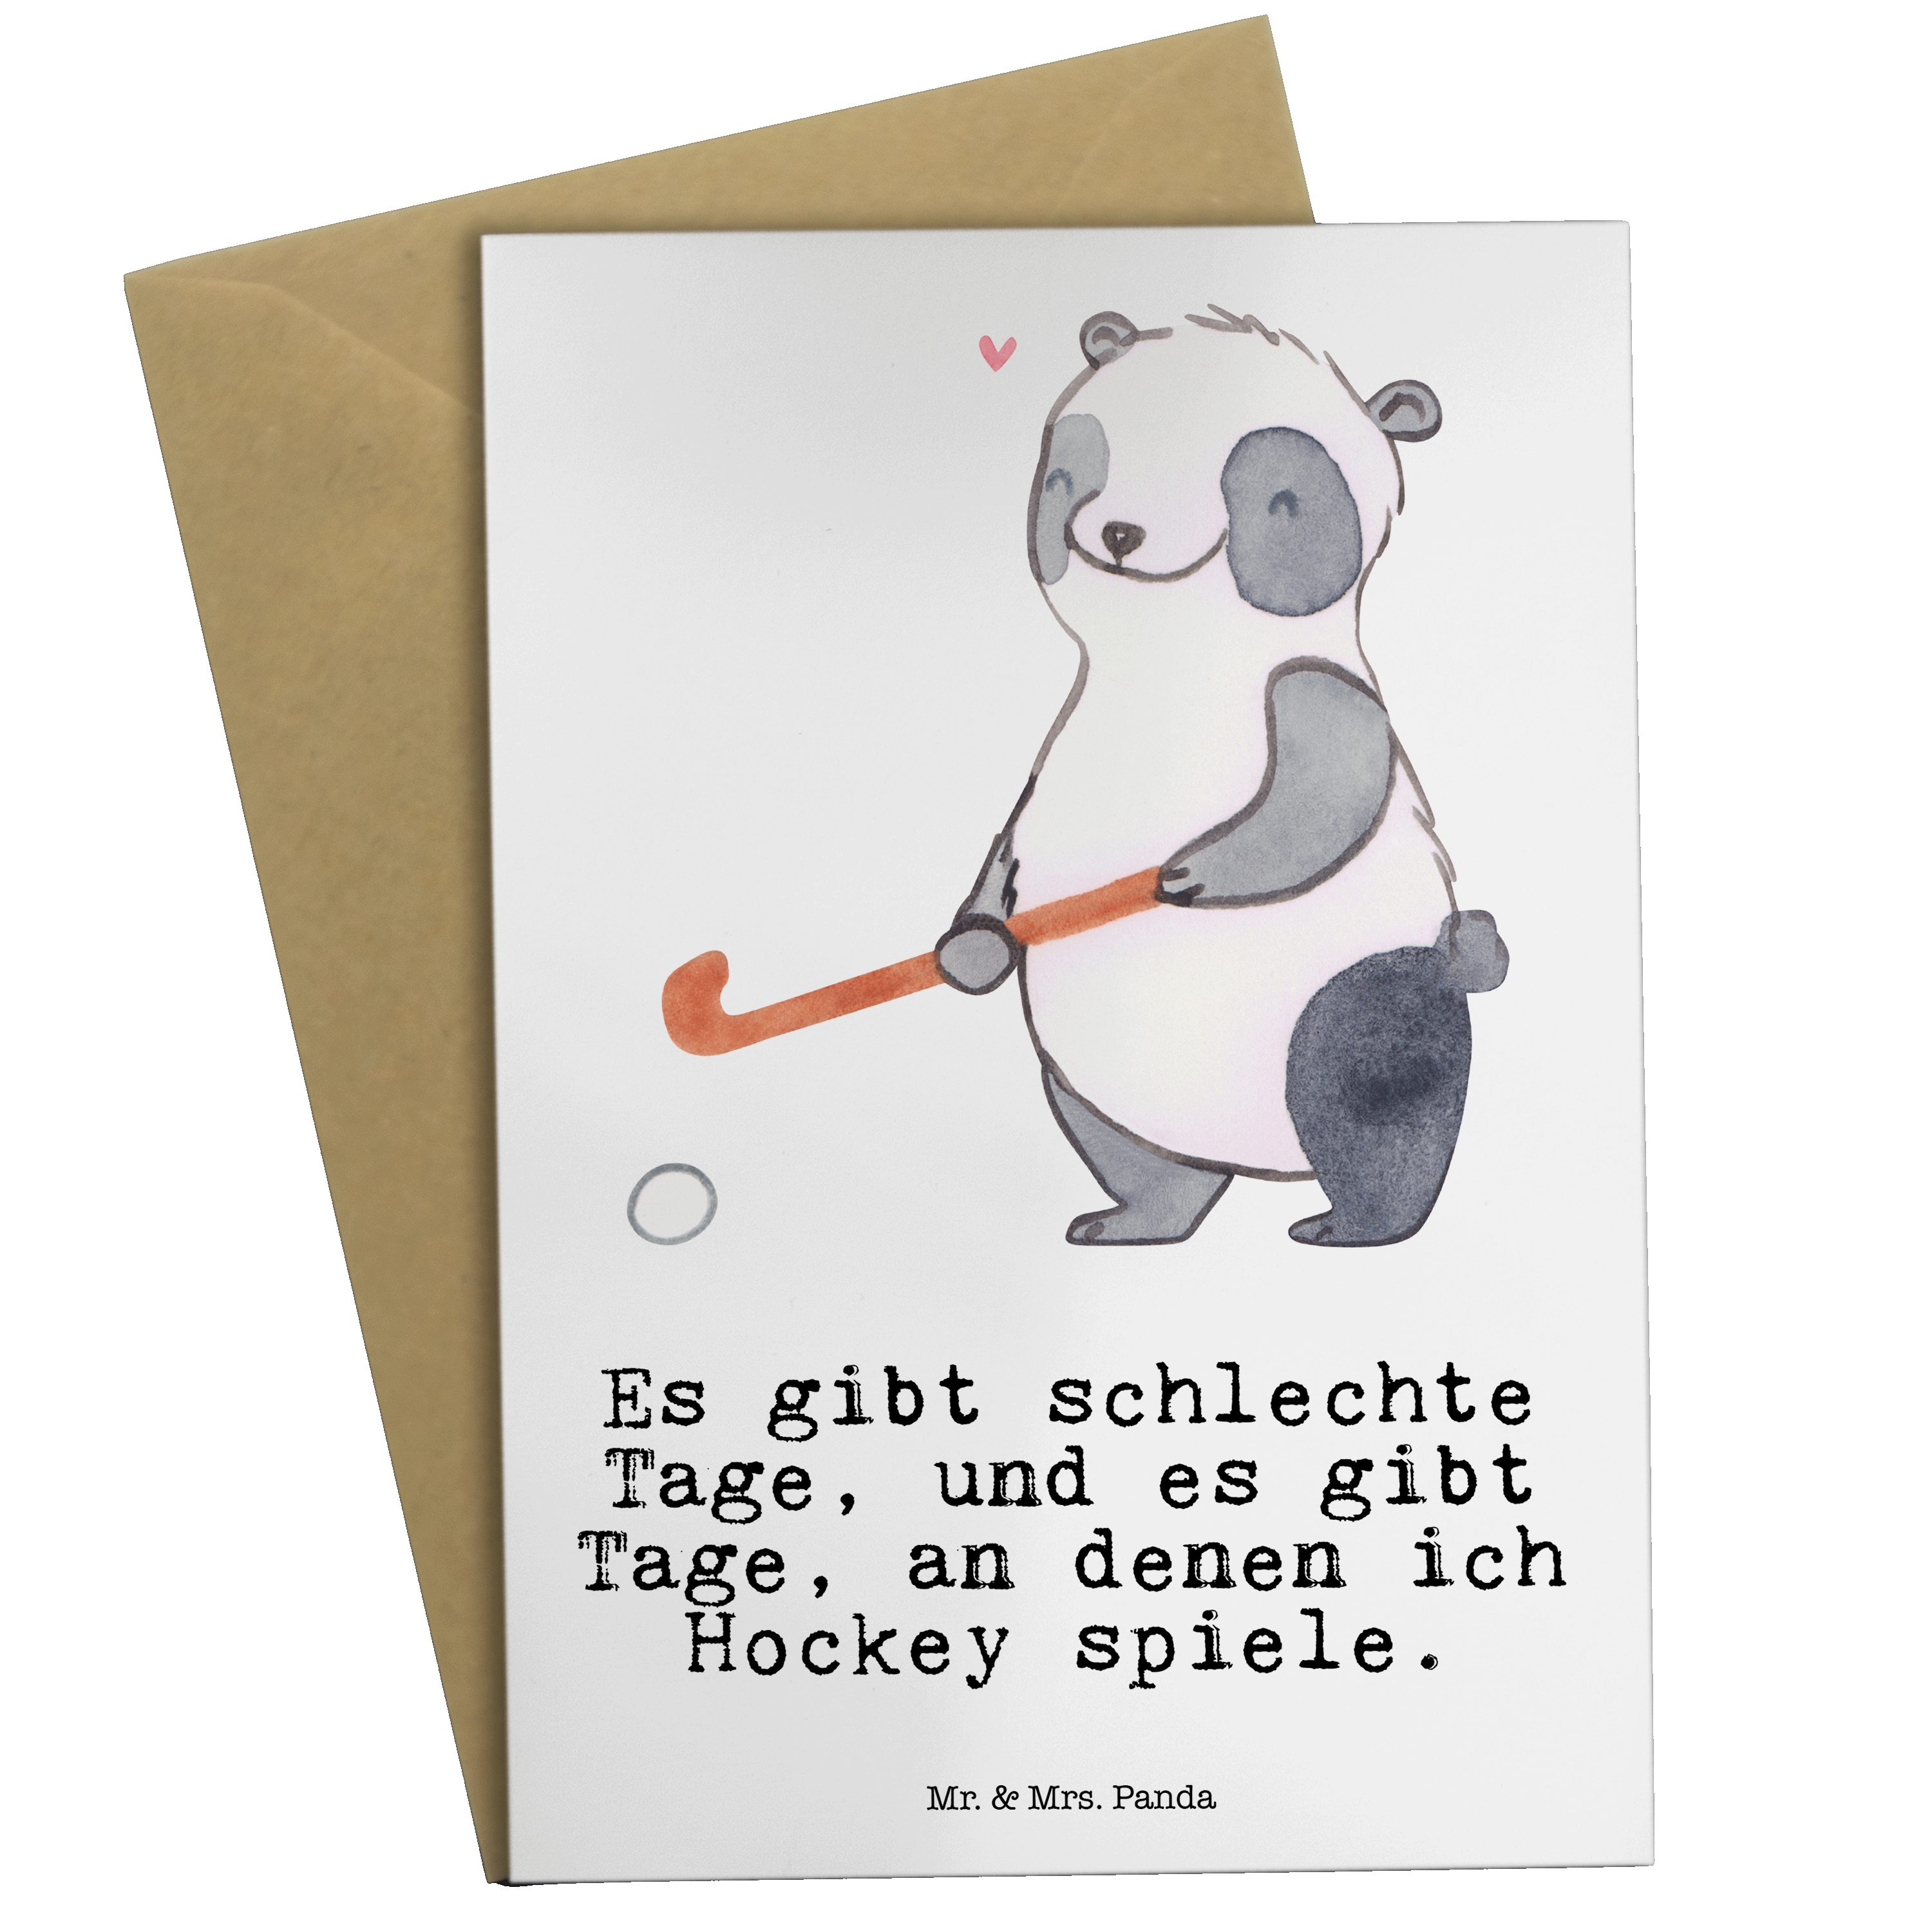 Mr. & Mrs. Panda Grußkarte Panda Hockey spielen Tage - Weiß - Geschenk, Auszeichnung, Sportler